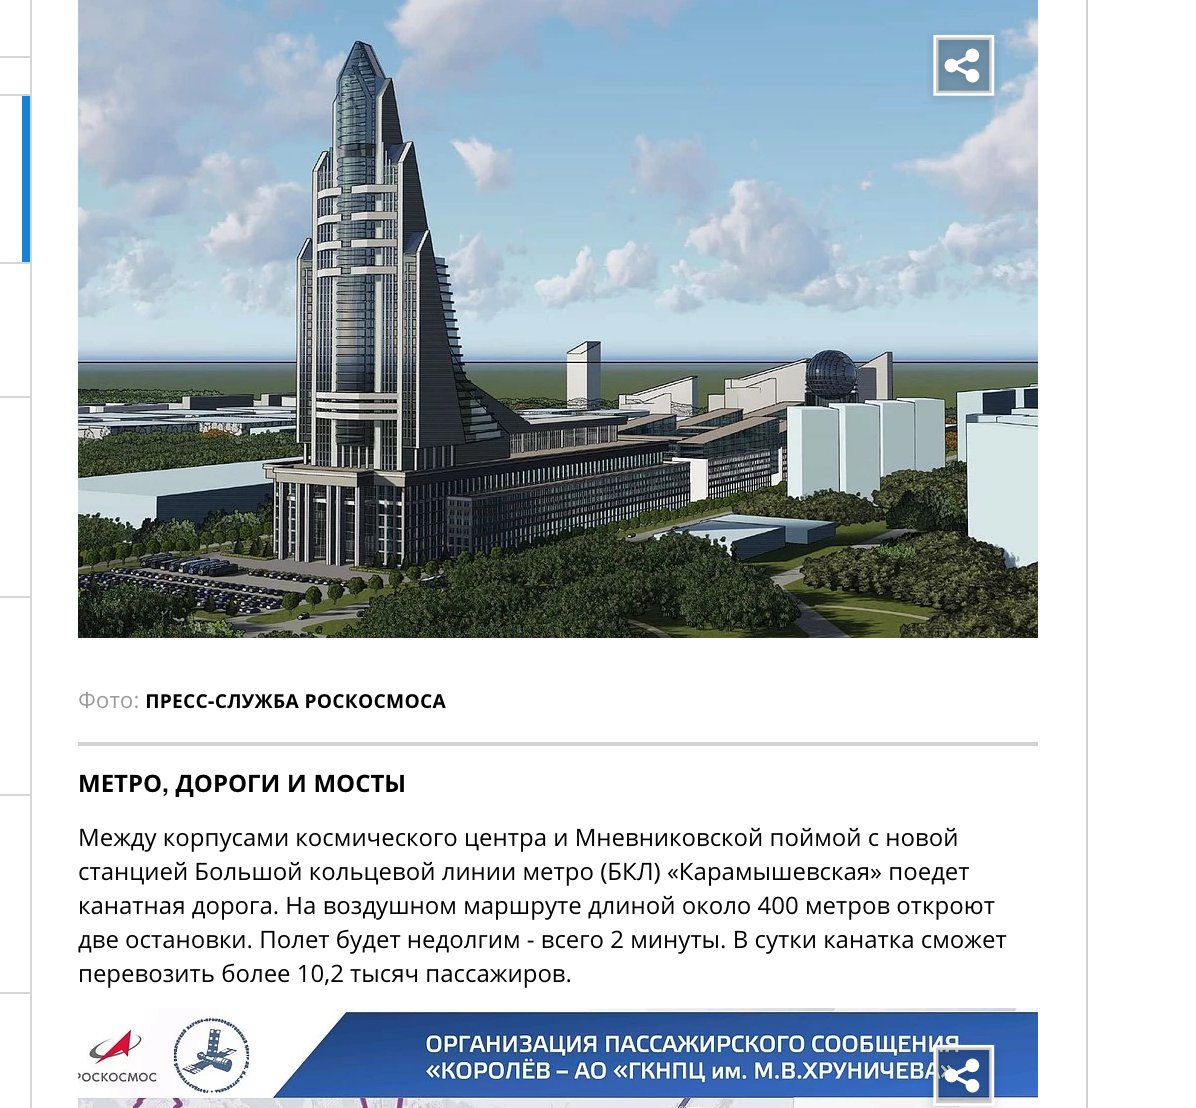 Какой сейчас самый главный проект у Роскосмоса?Правильно - строительство 200-метрового офиса в виде Ракеты с торговым центром, квартирами и канатной дорогой.